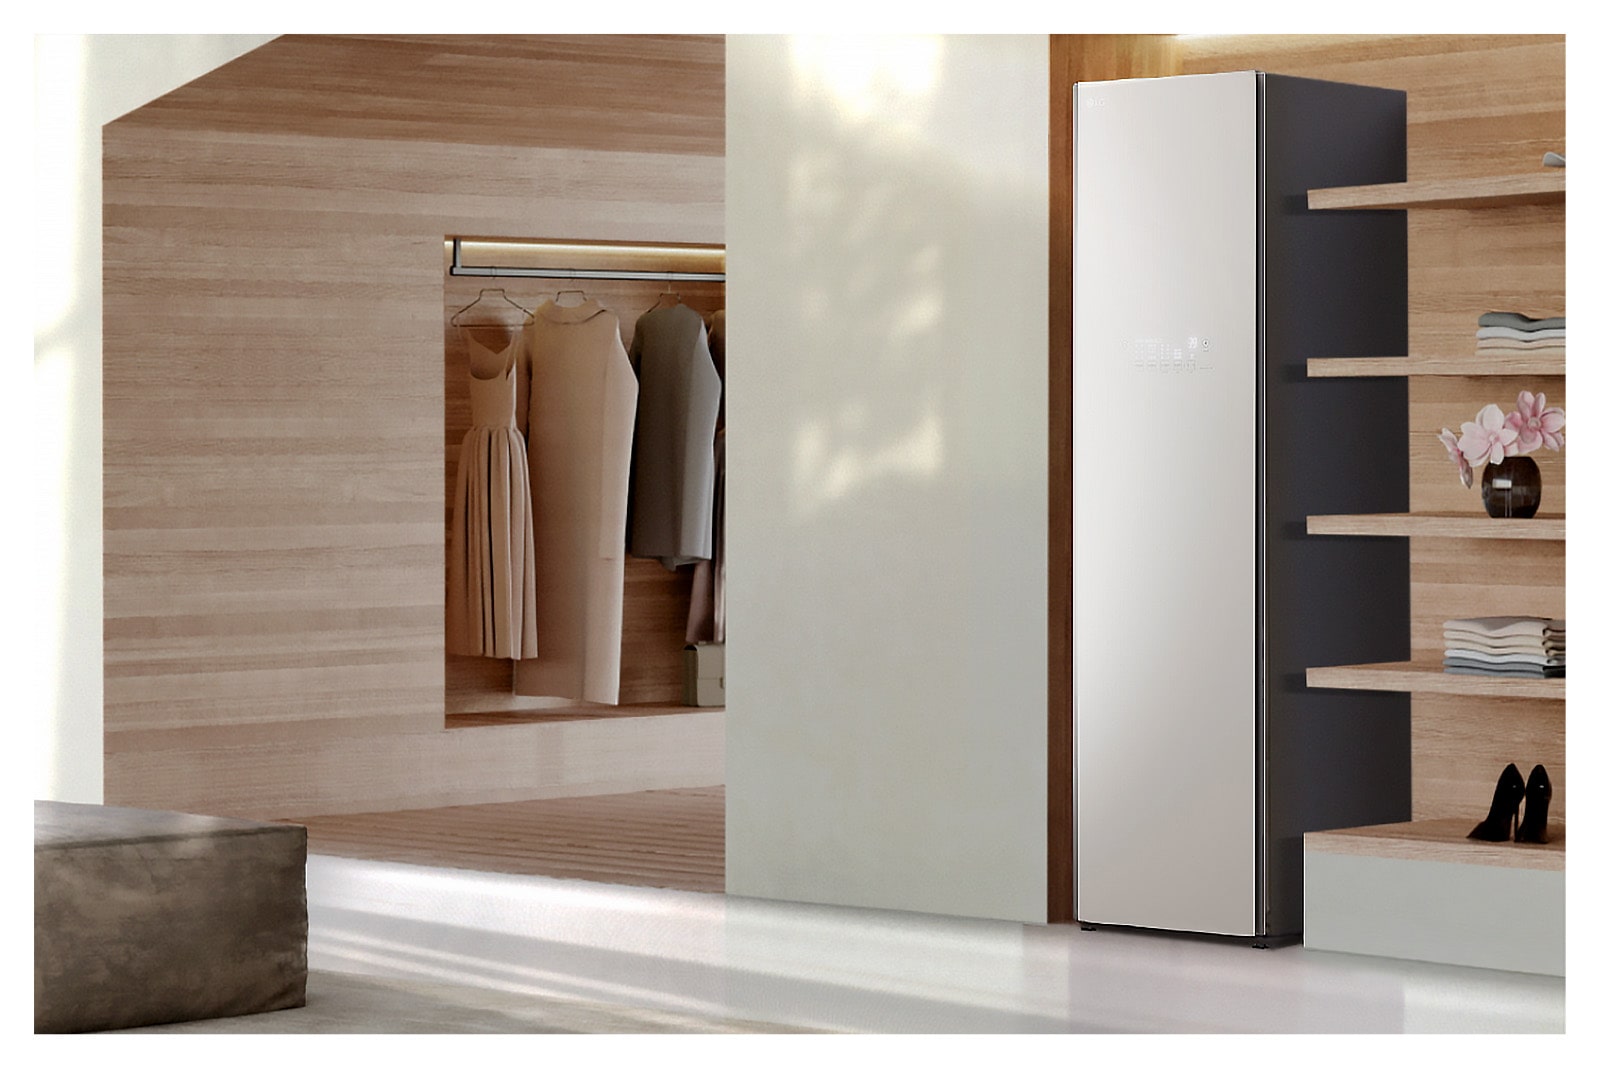 Hình ảnh tủ chăm sóc quần áo LG Styler Objet Collection màu xanh lá cây sương mờ đặt trong phòng thay đồ.